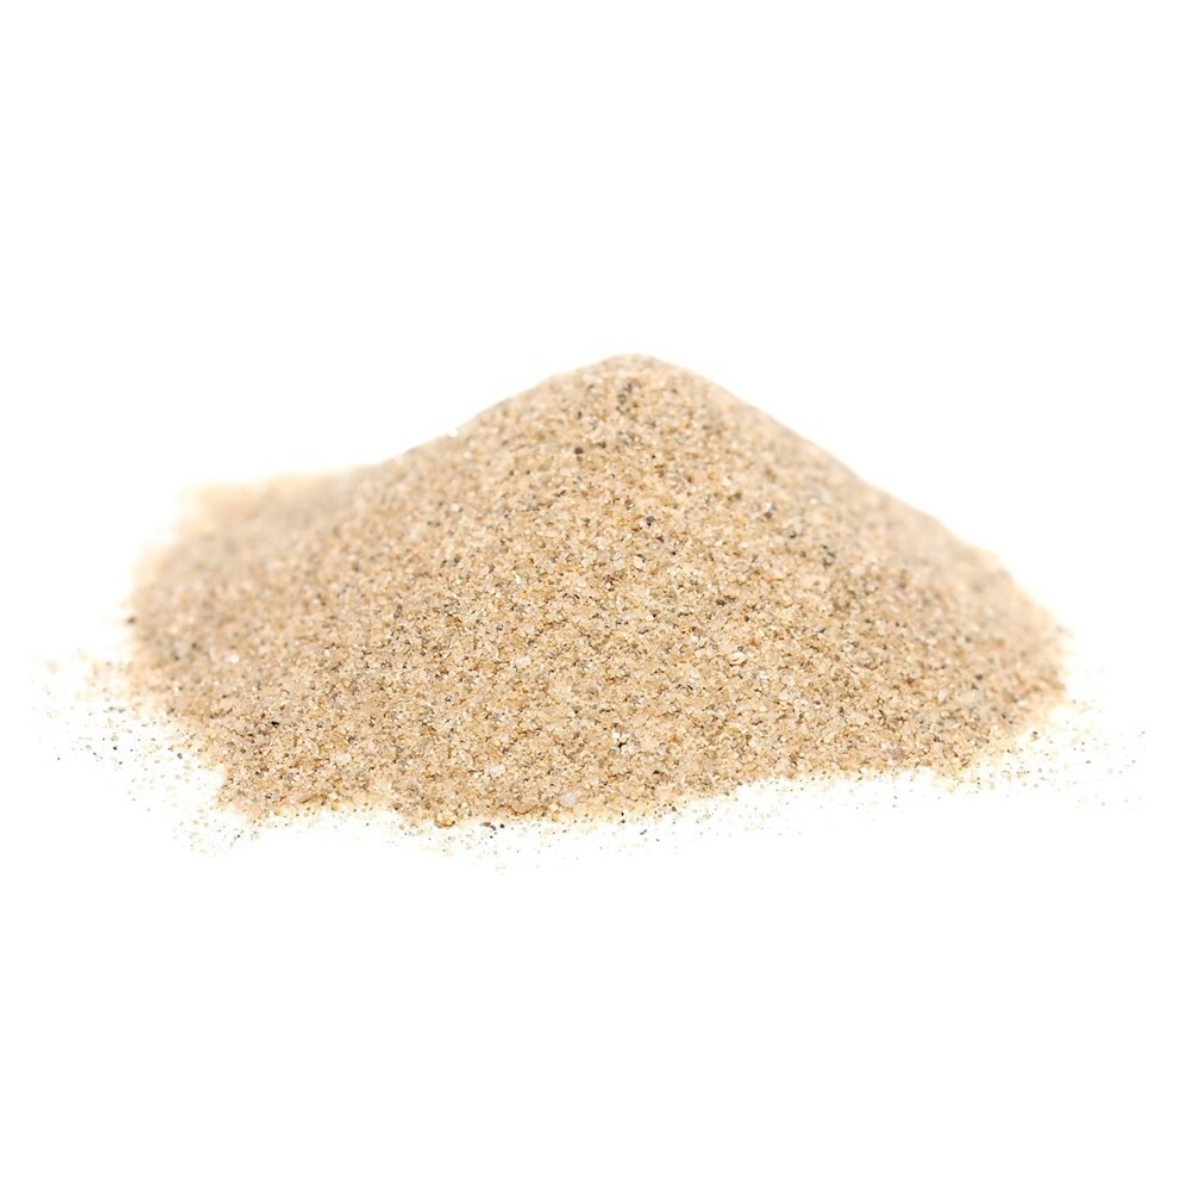 Filtration sand 0.8 - 1.25 mm Media- 25kg